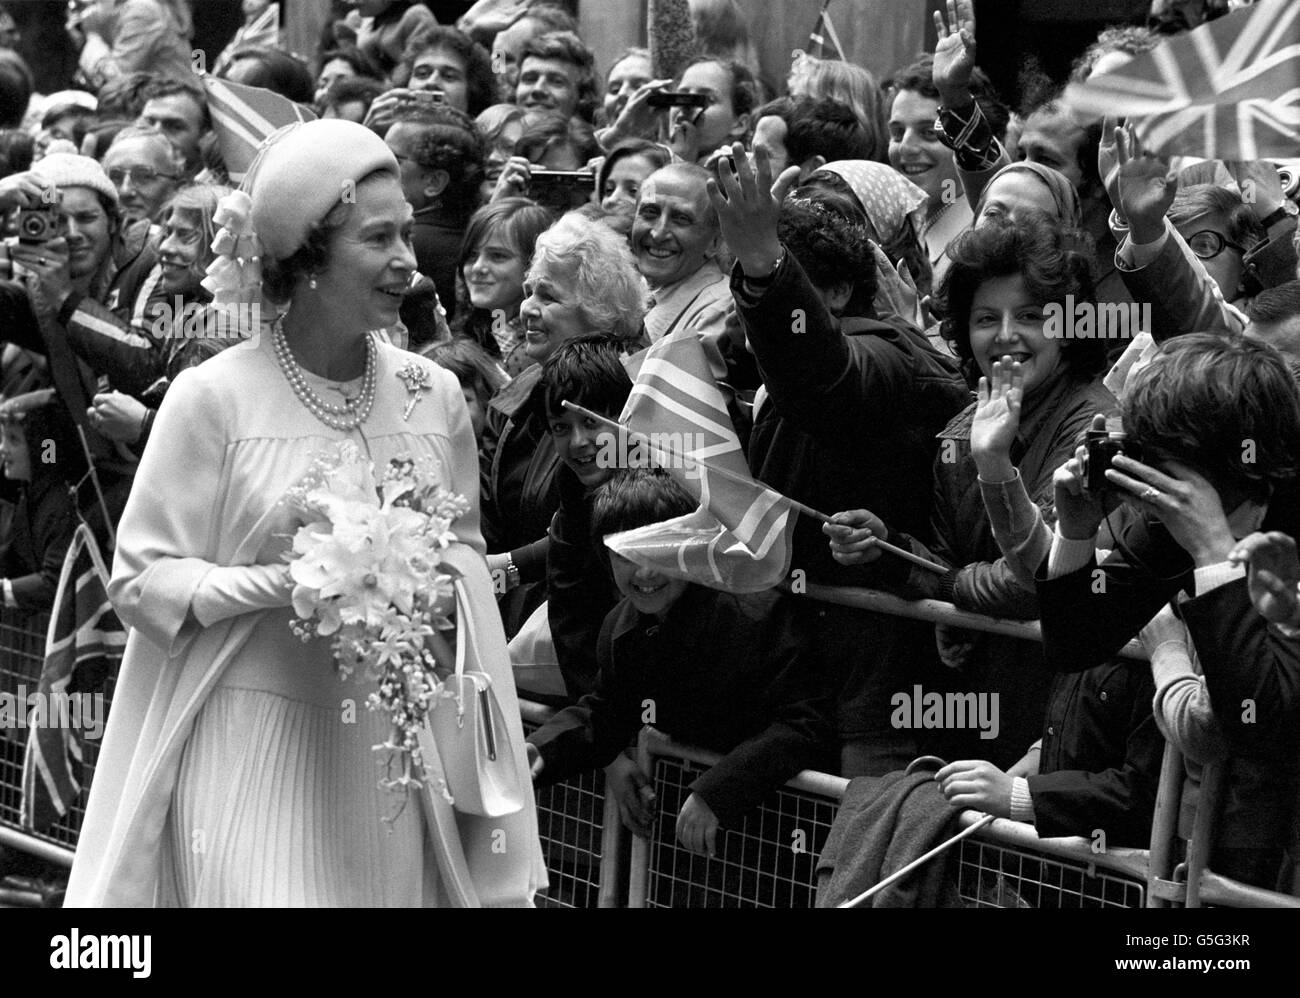 La regina Elisabetta II incontra persone durante la sua passeggiata a Guildhall dopo aver partecipato al Servizio di Ringraziamento del Giubileo d'Argento presso la Cattedrale di San Paolo. Foto Stock